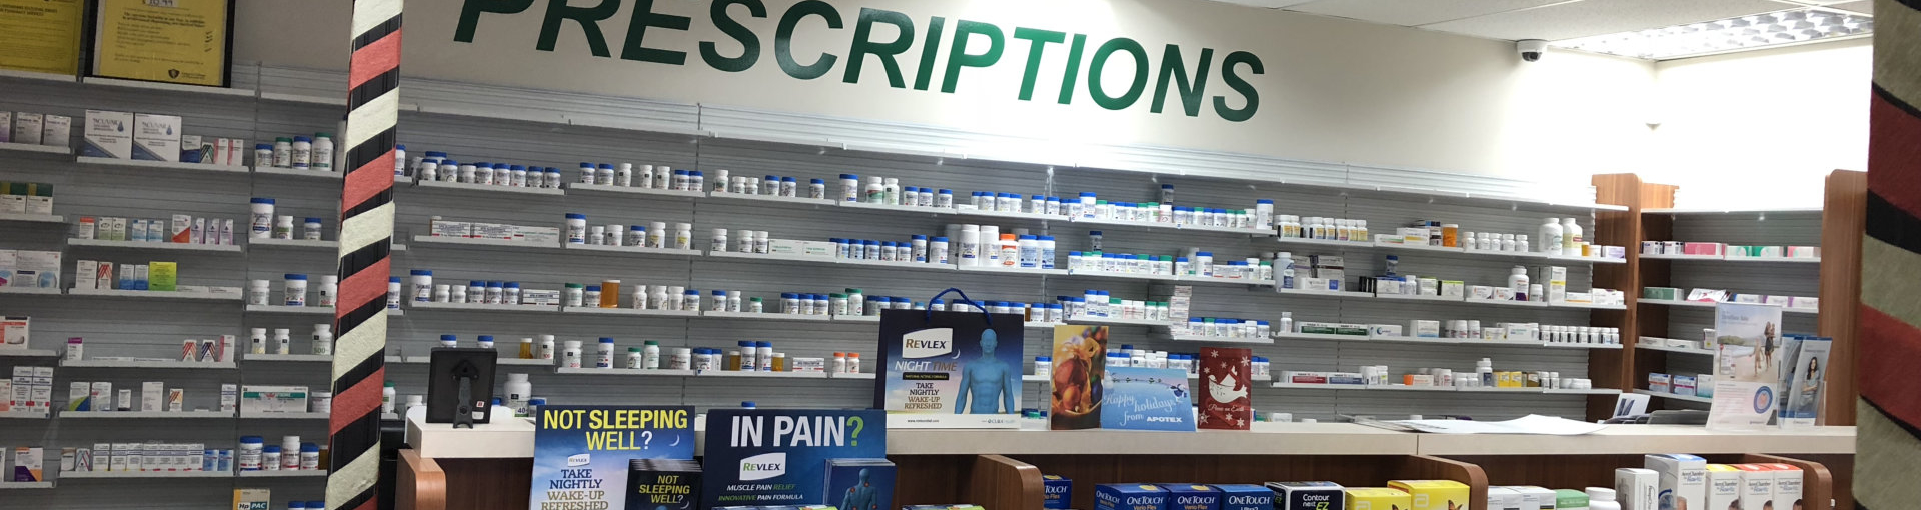 inside the pharmacy